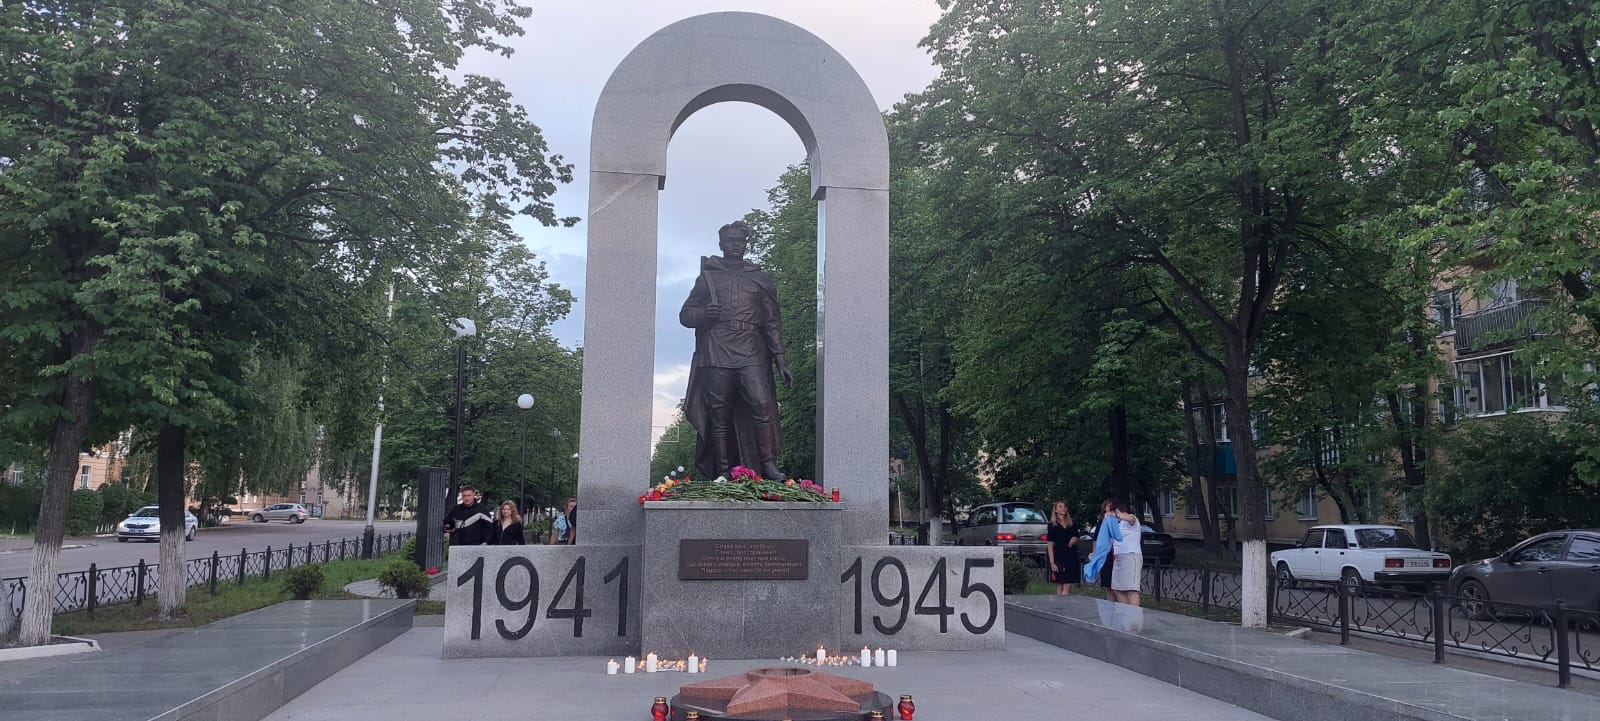 Вы сейчас просматриваете Ежегодно в память о начале Великой Отечественной войны проводится международная акция «Свеча памяти».